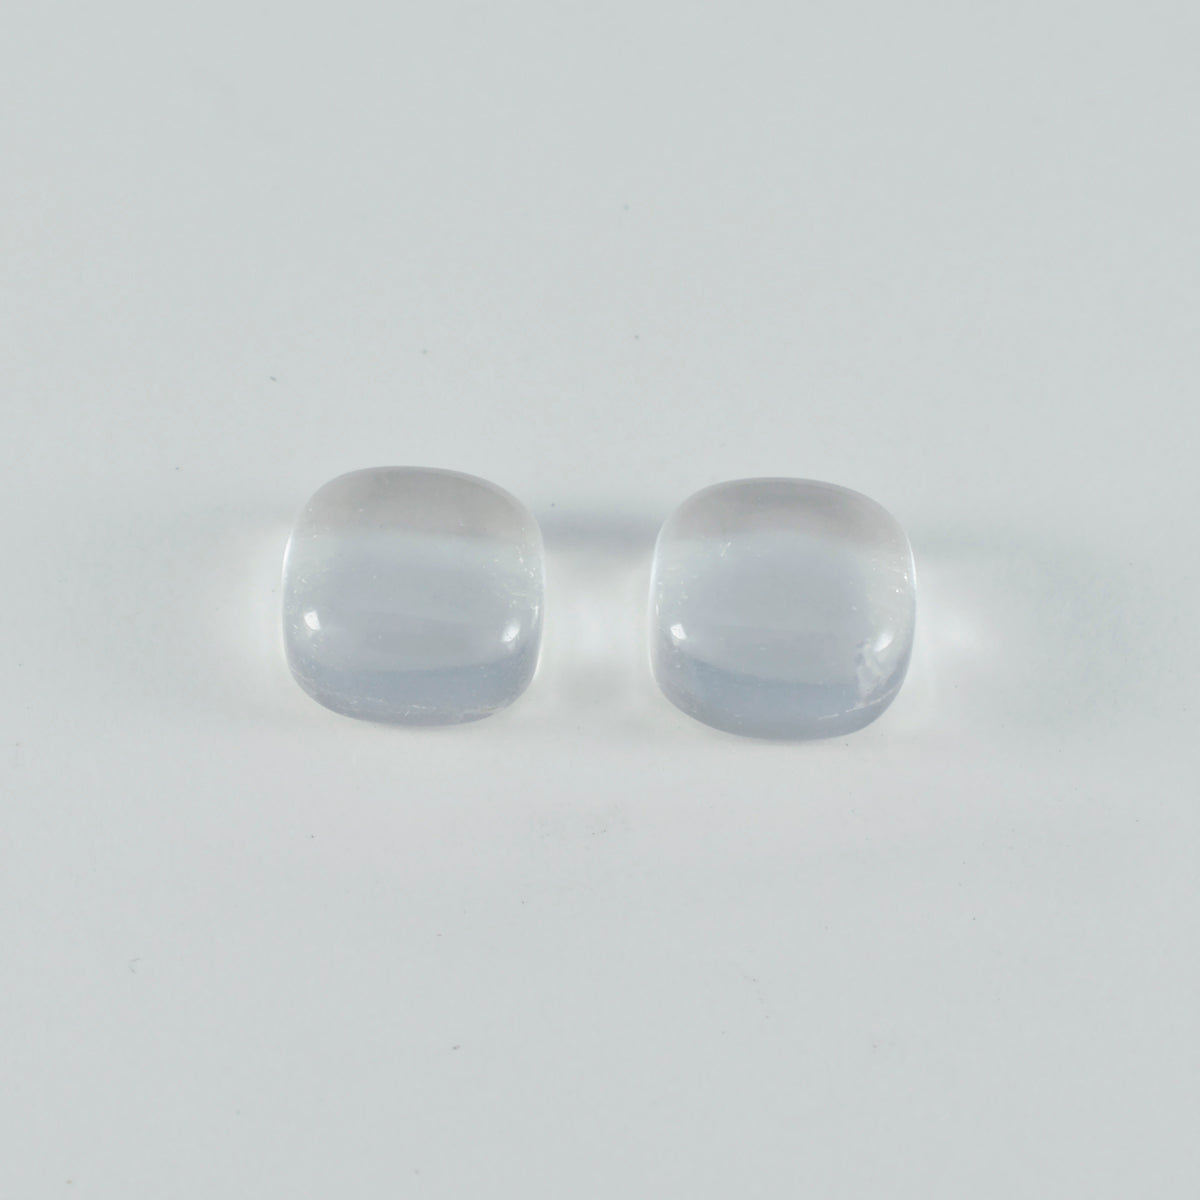 riyogems 1 шт. кабошон из белого кристалла кварца 9x9 мм в форме подушки, красивый качественный свободный камень